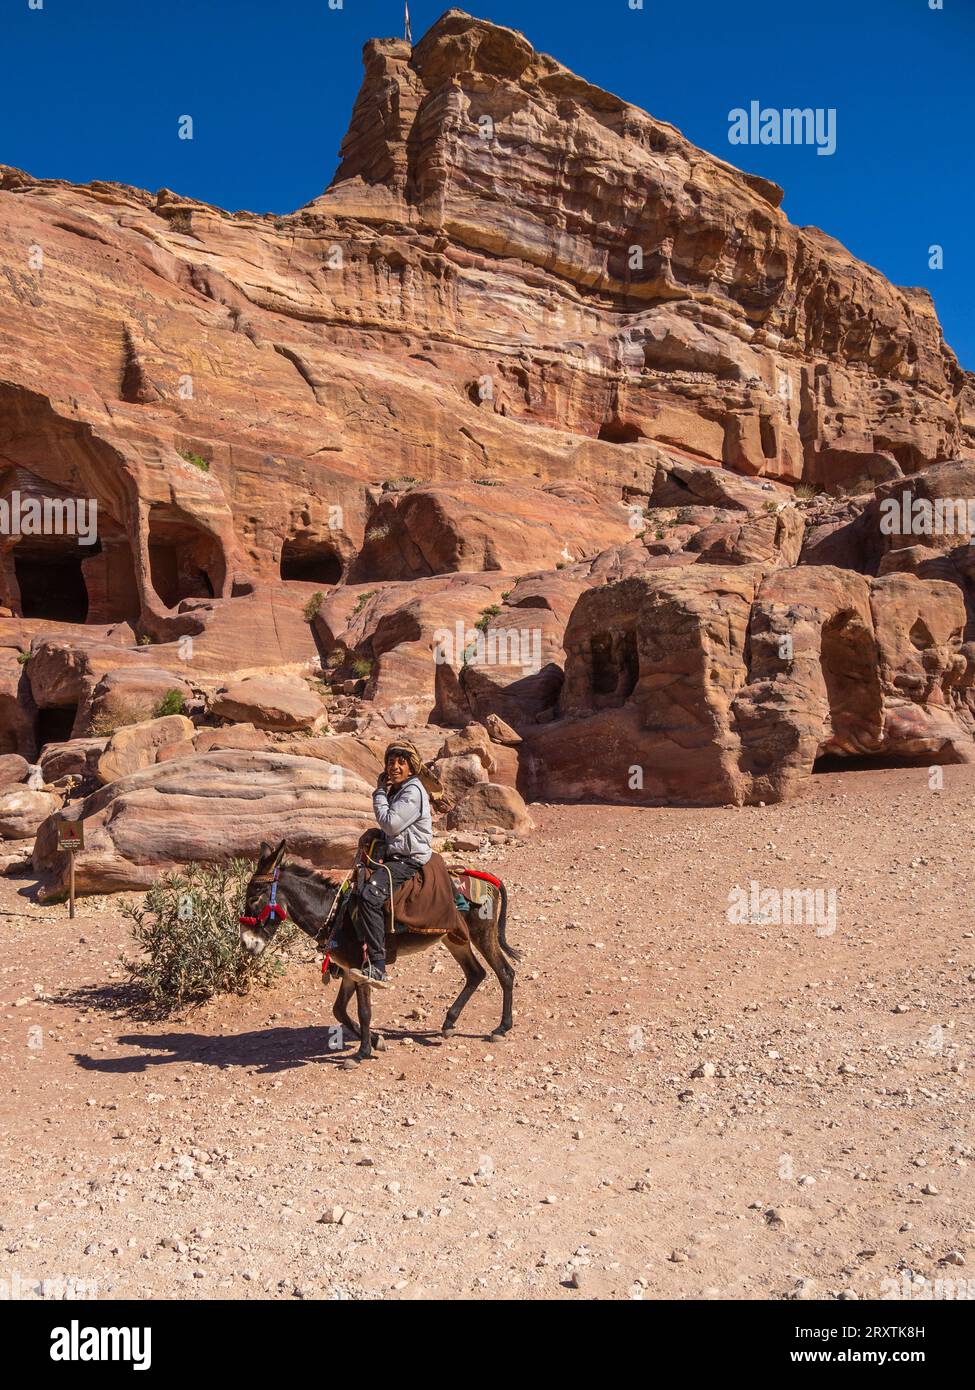 Âne et cavalier, Parc archéologique de Petra, site du patrimoine mondial de l'UNESCO, l'une des sept nouvelles merveilles du monde, Pétra, Jordanie, Moyen-Orient Banque D'Images